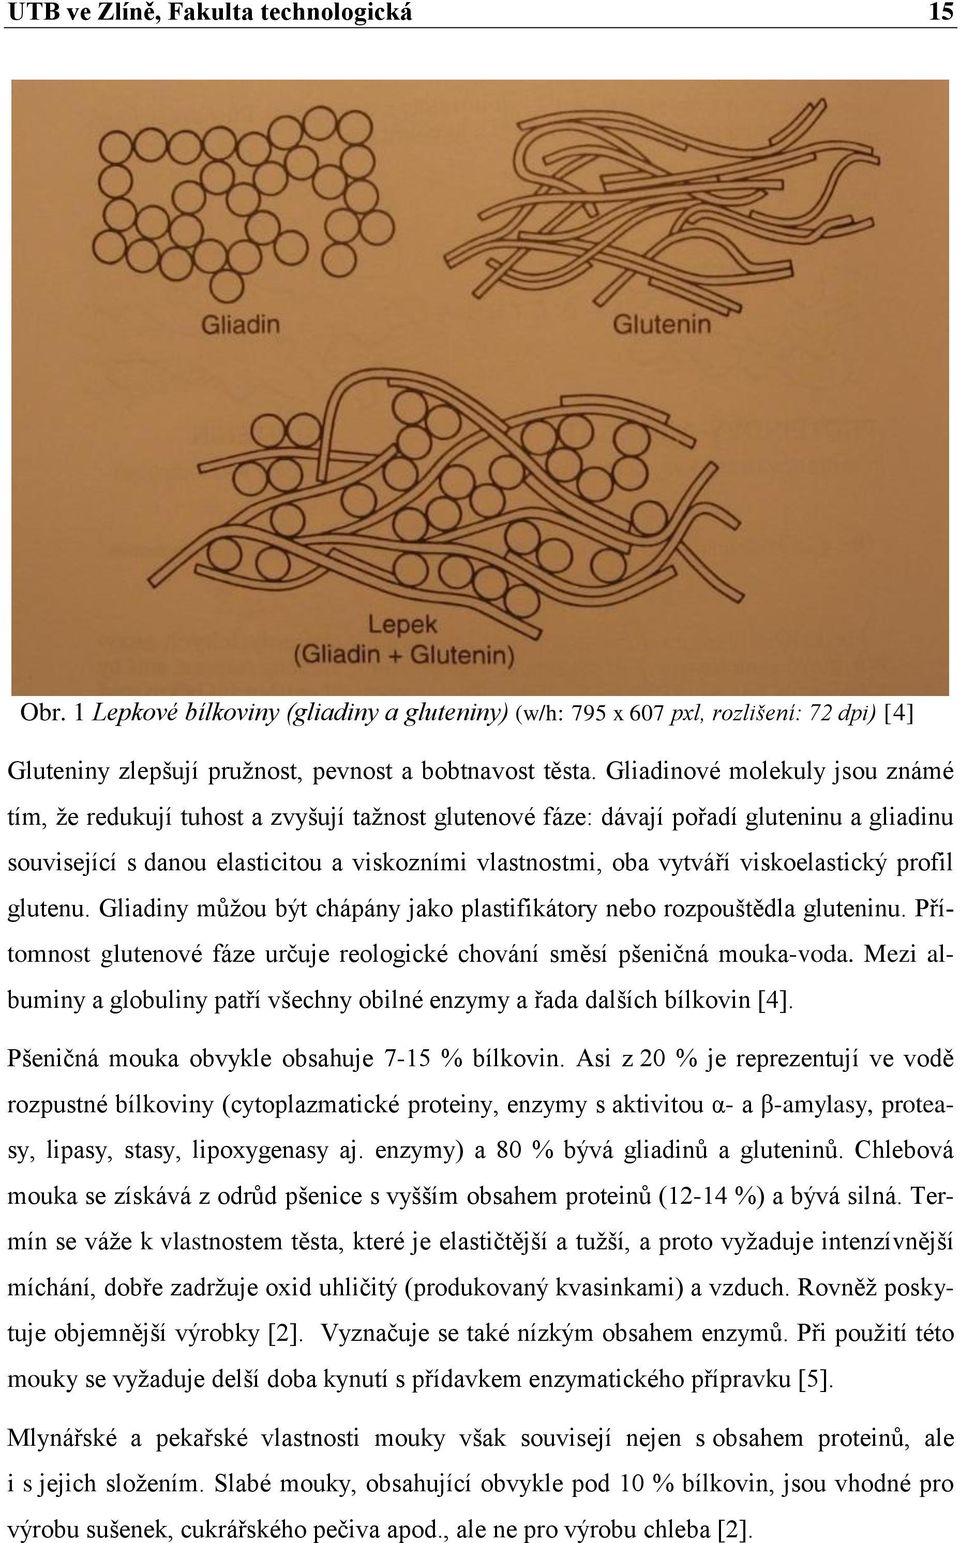 viskoelastický profil glutenu. Gliadiny můţou být chápány jako plastifikátory nebo rozpouštědla gluteninu. Přítomnost glutenové fáze určuje reologické chování směsí pšeničná mouka-voda.